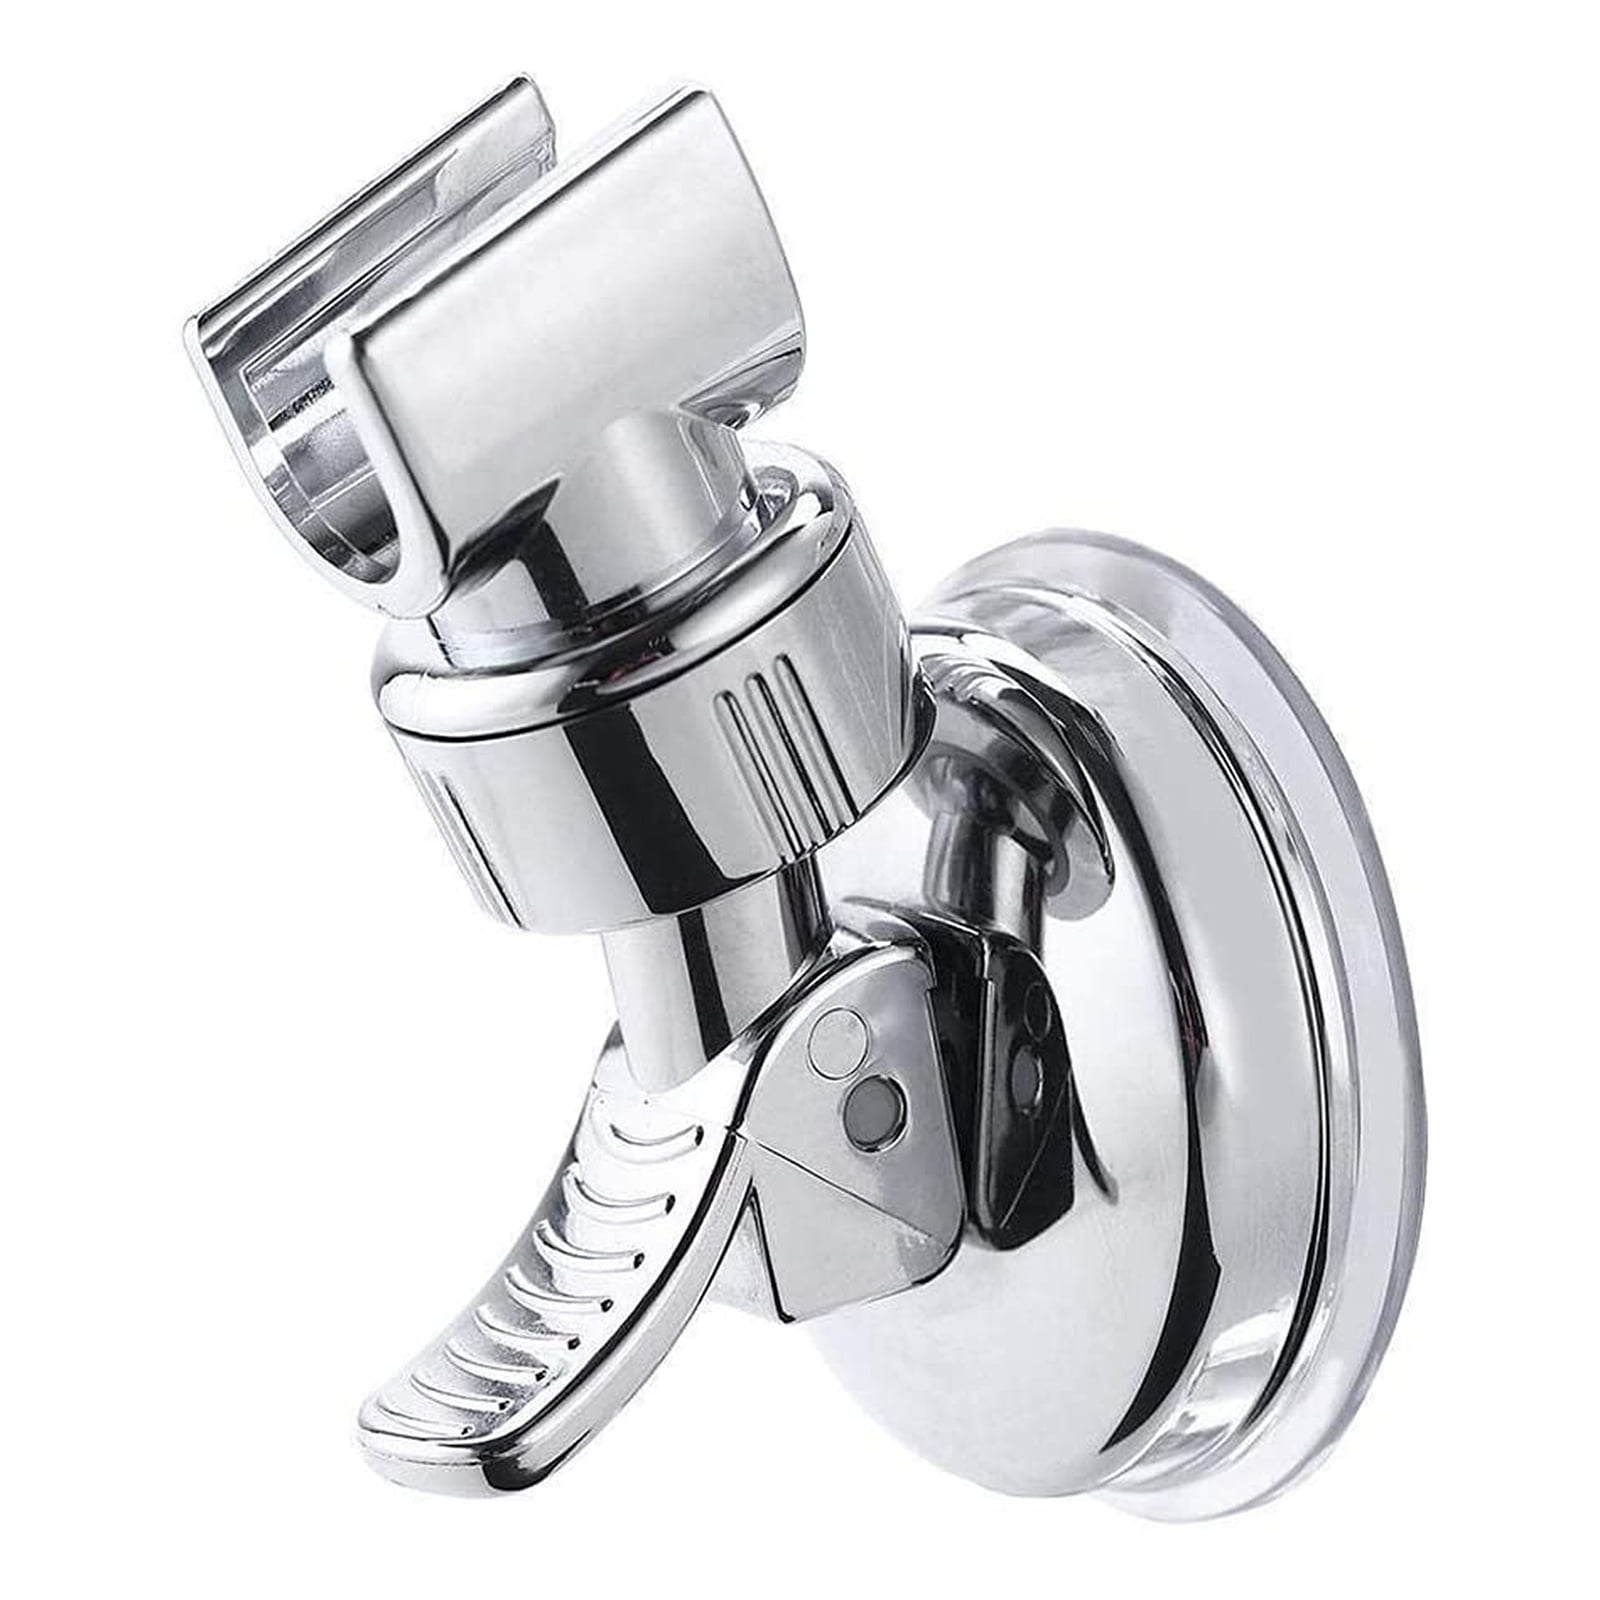 Bathroom Shower Head Holder Adjust No Drilling Bracket Mount 7-Gear Adjustable 